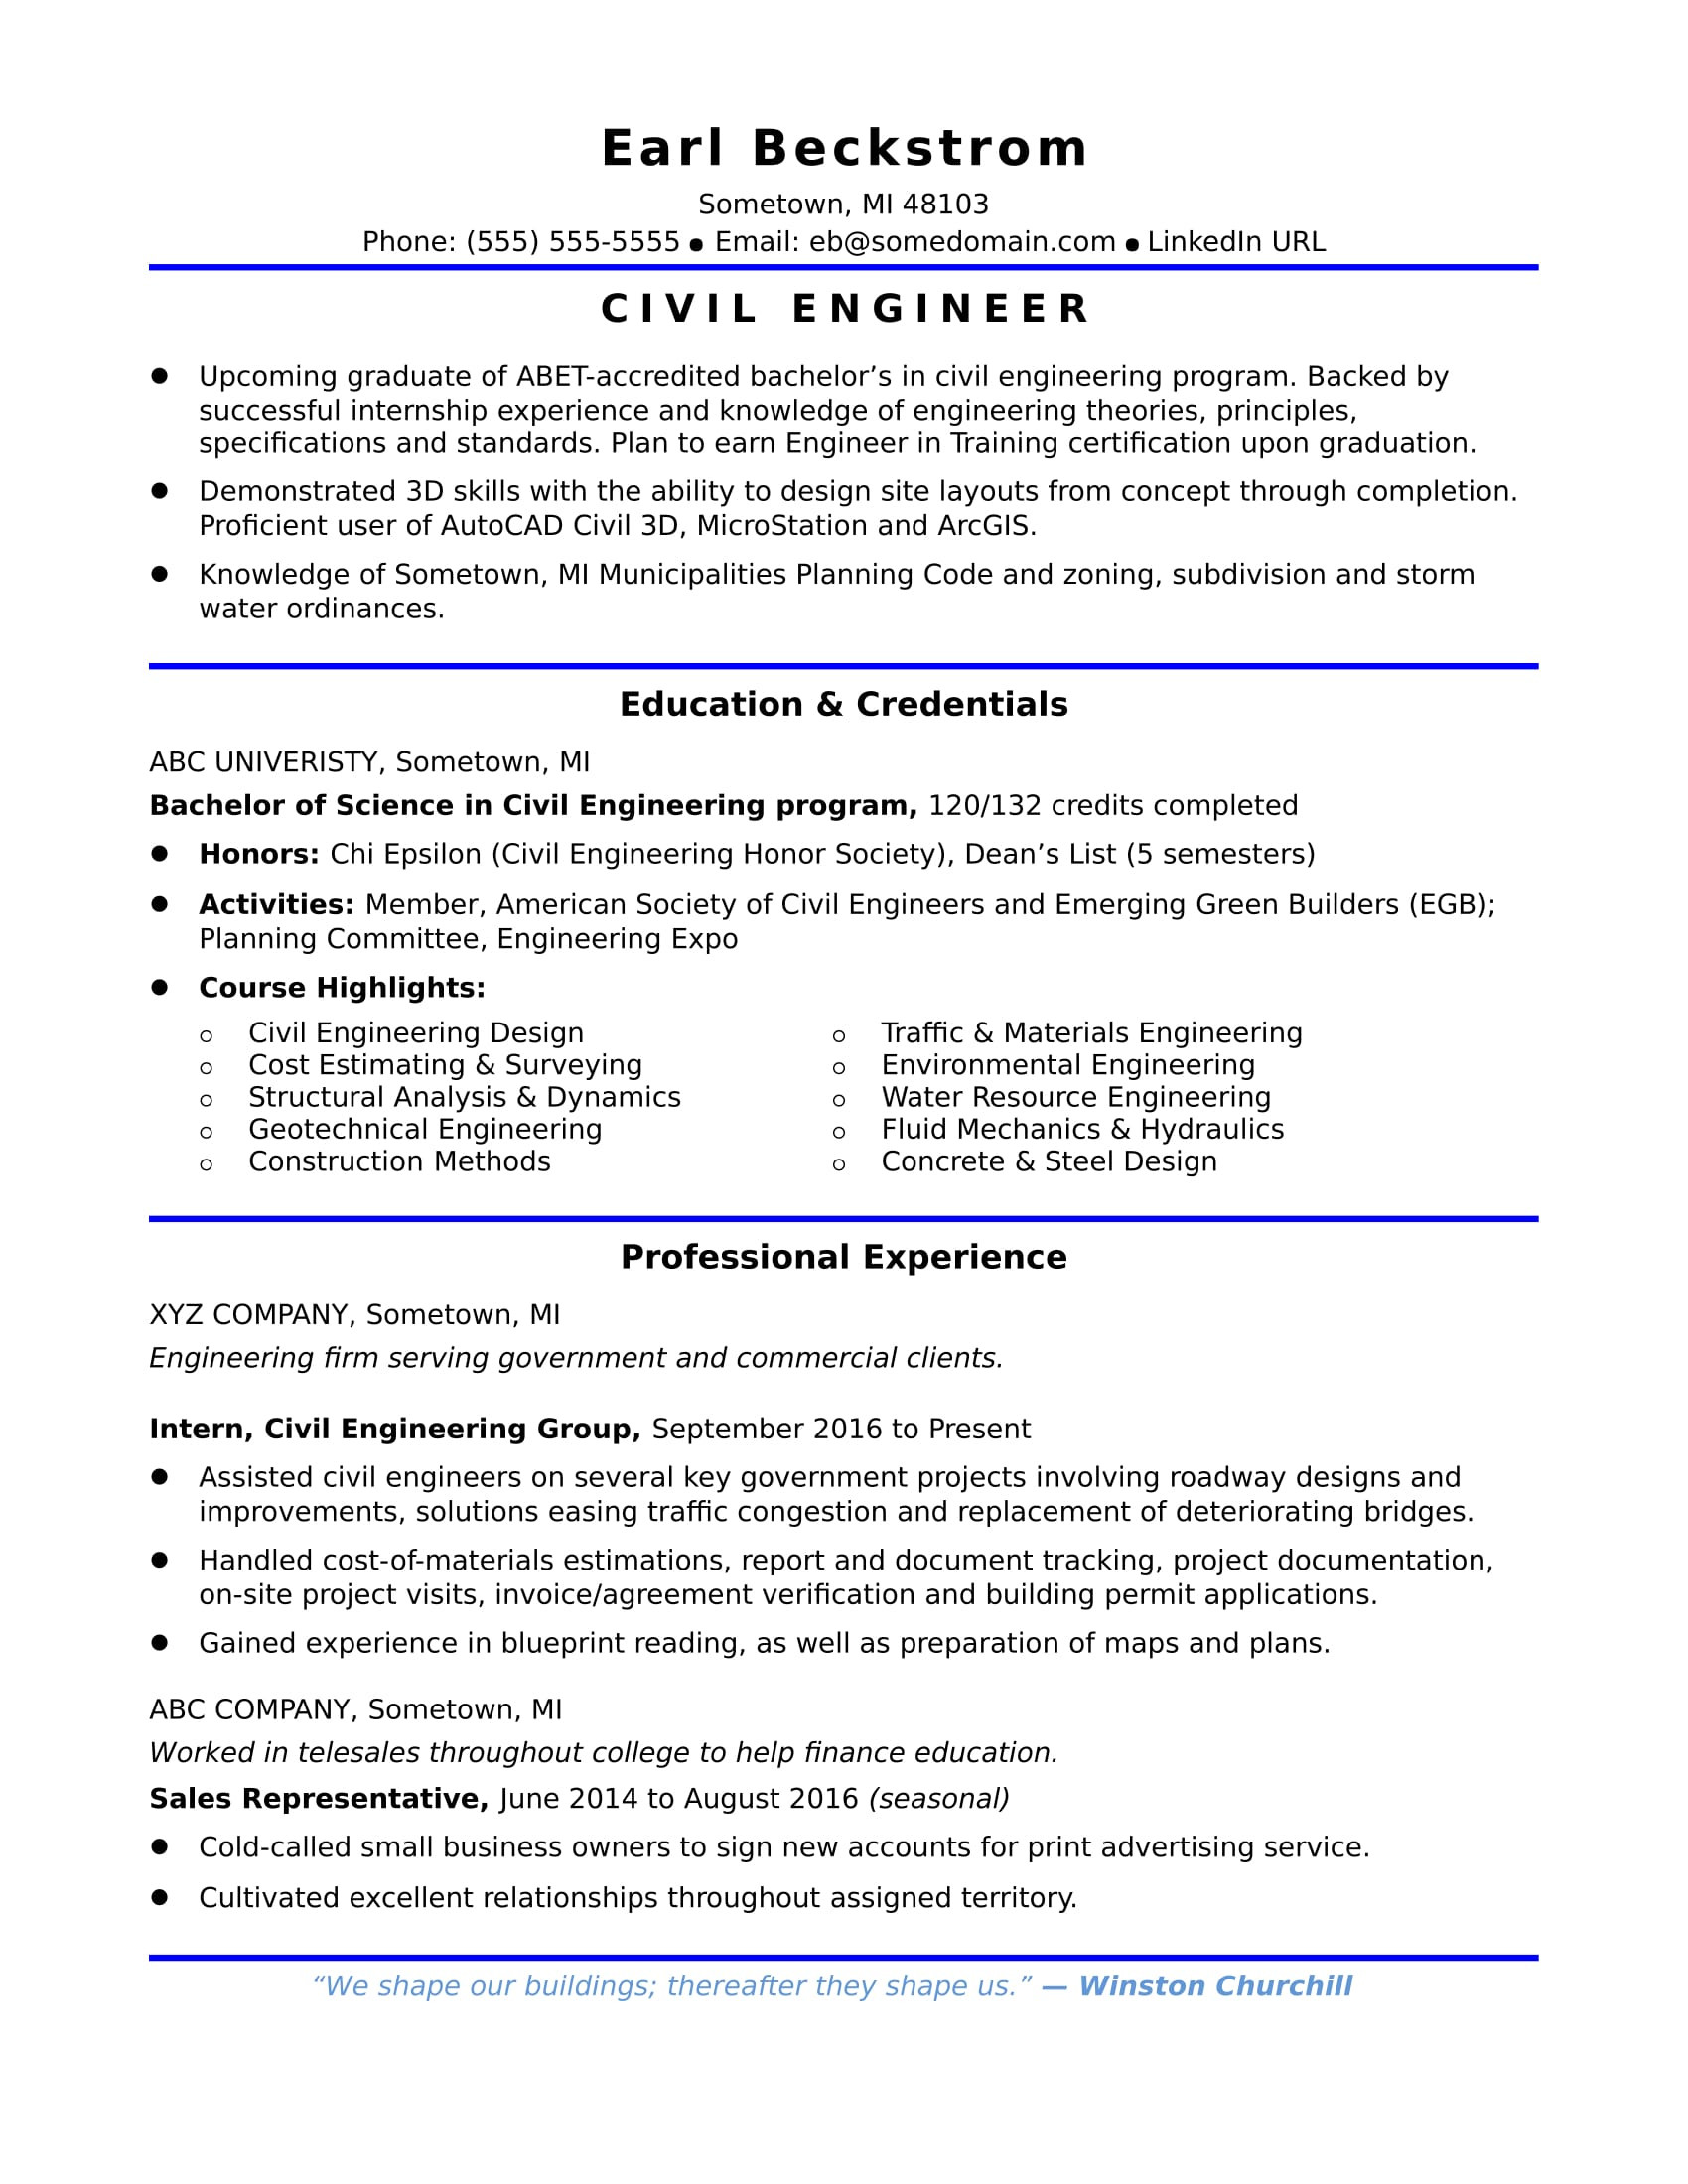 Sample Resume for Journalism Job for Freshers Entry-level Civil Engineering Resume Monster.com